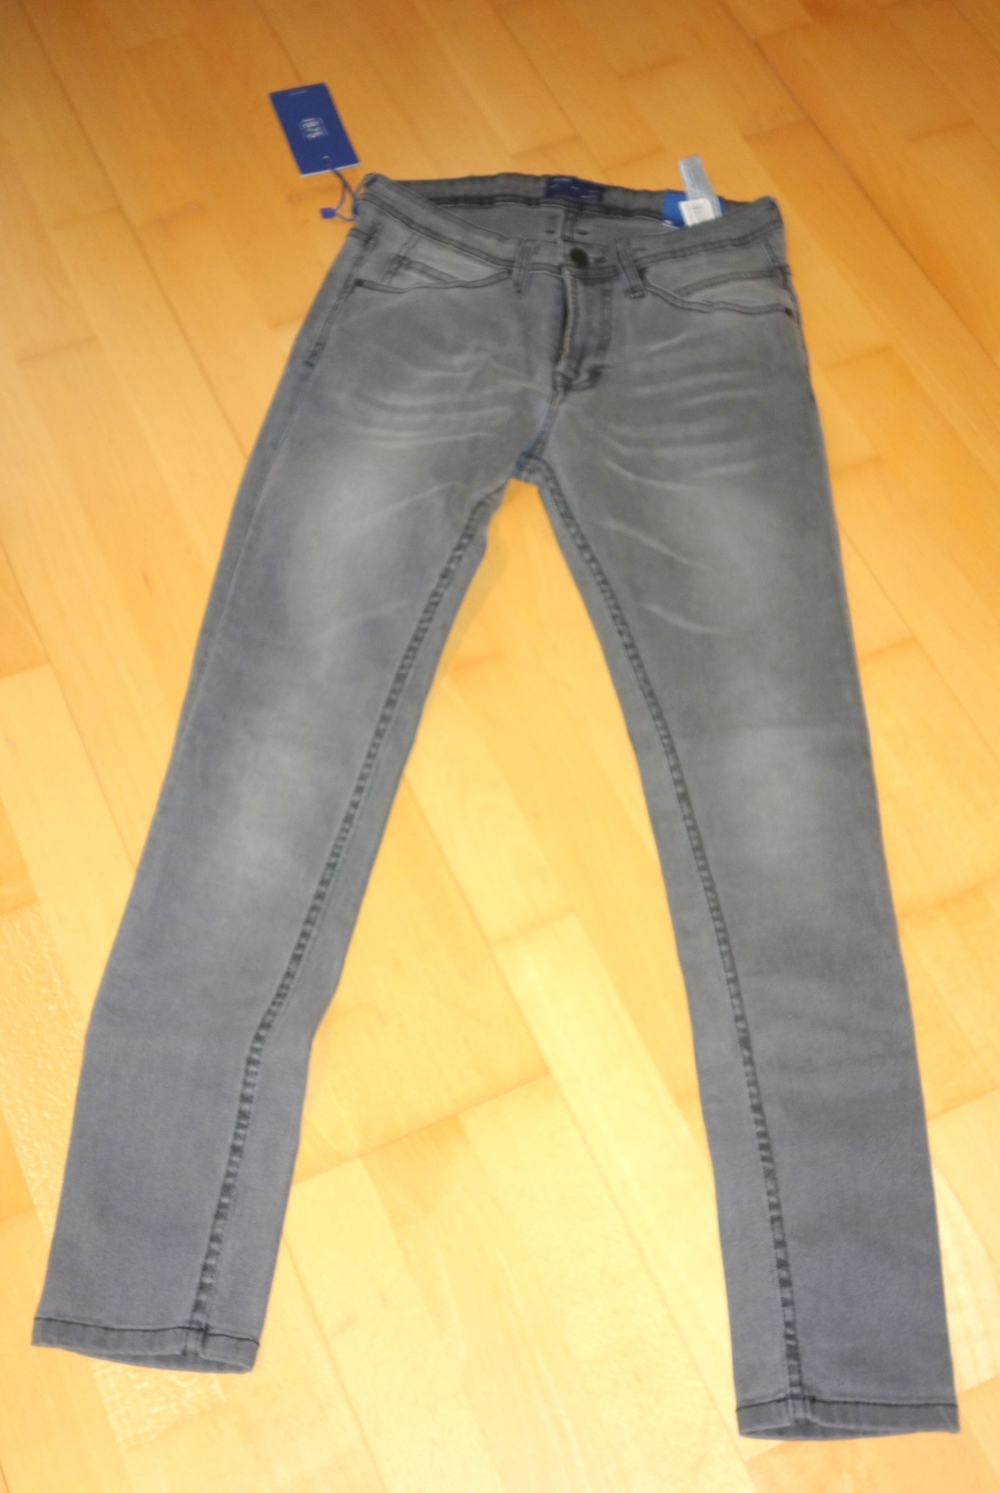 NEU graue Jeans skinny Fit Größe 38